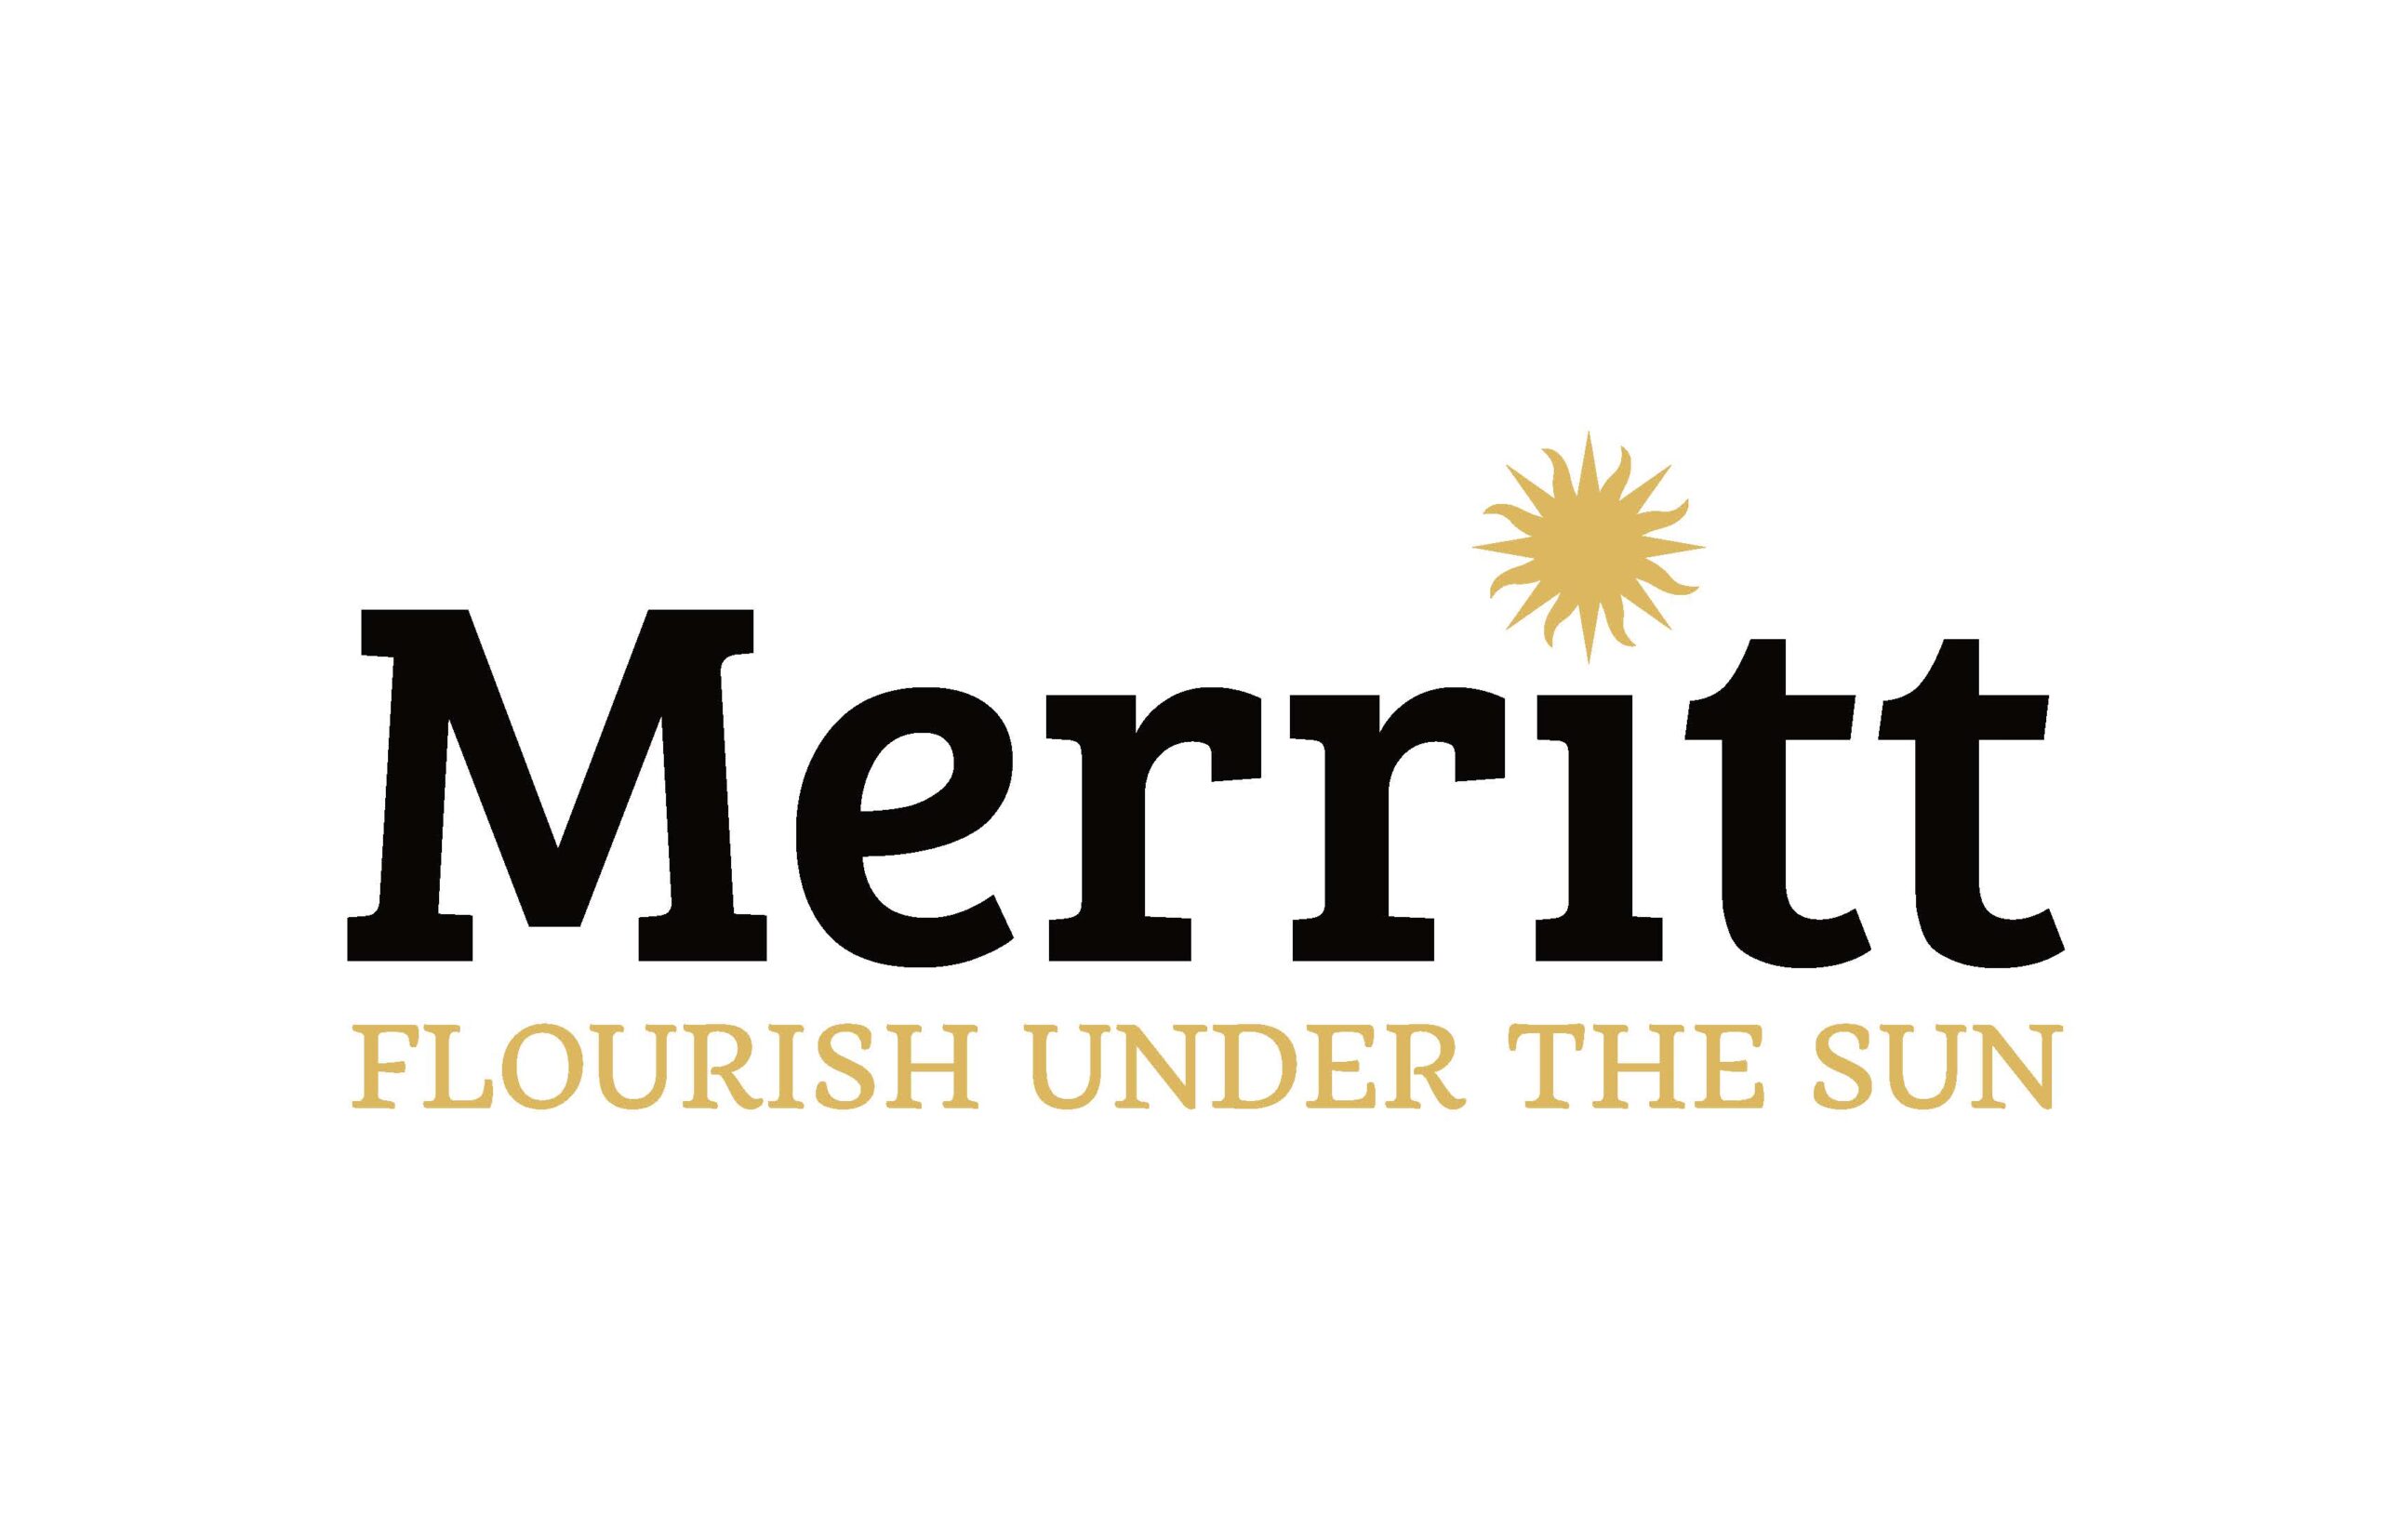 City of Merritt 